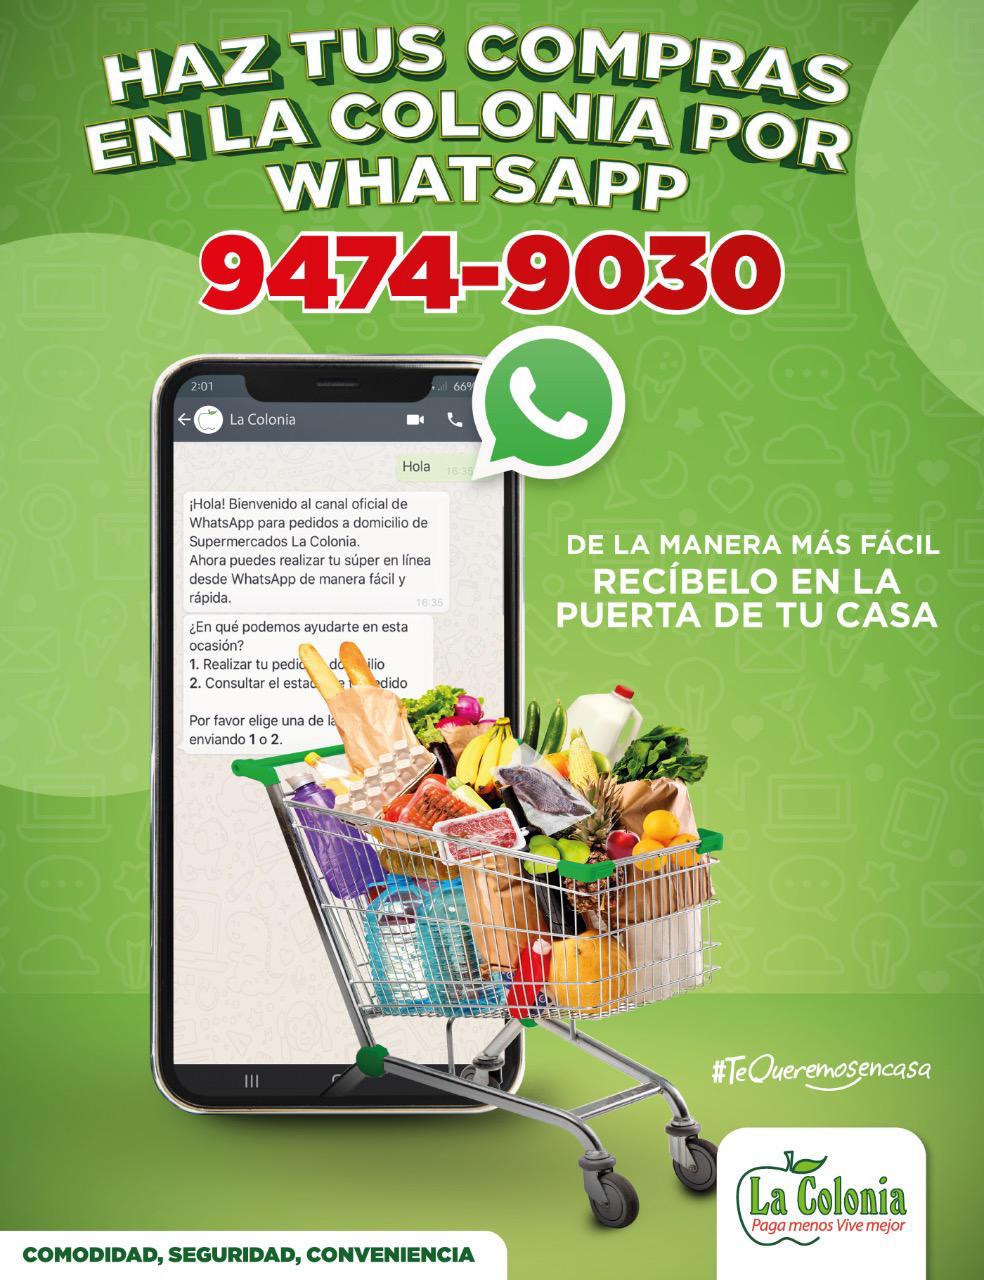 WhatsApp Image 2020-05-04 at 07.35.41.jpeg